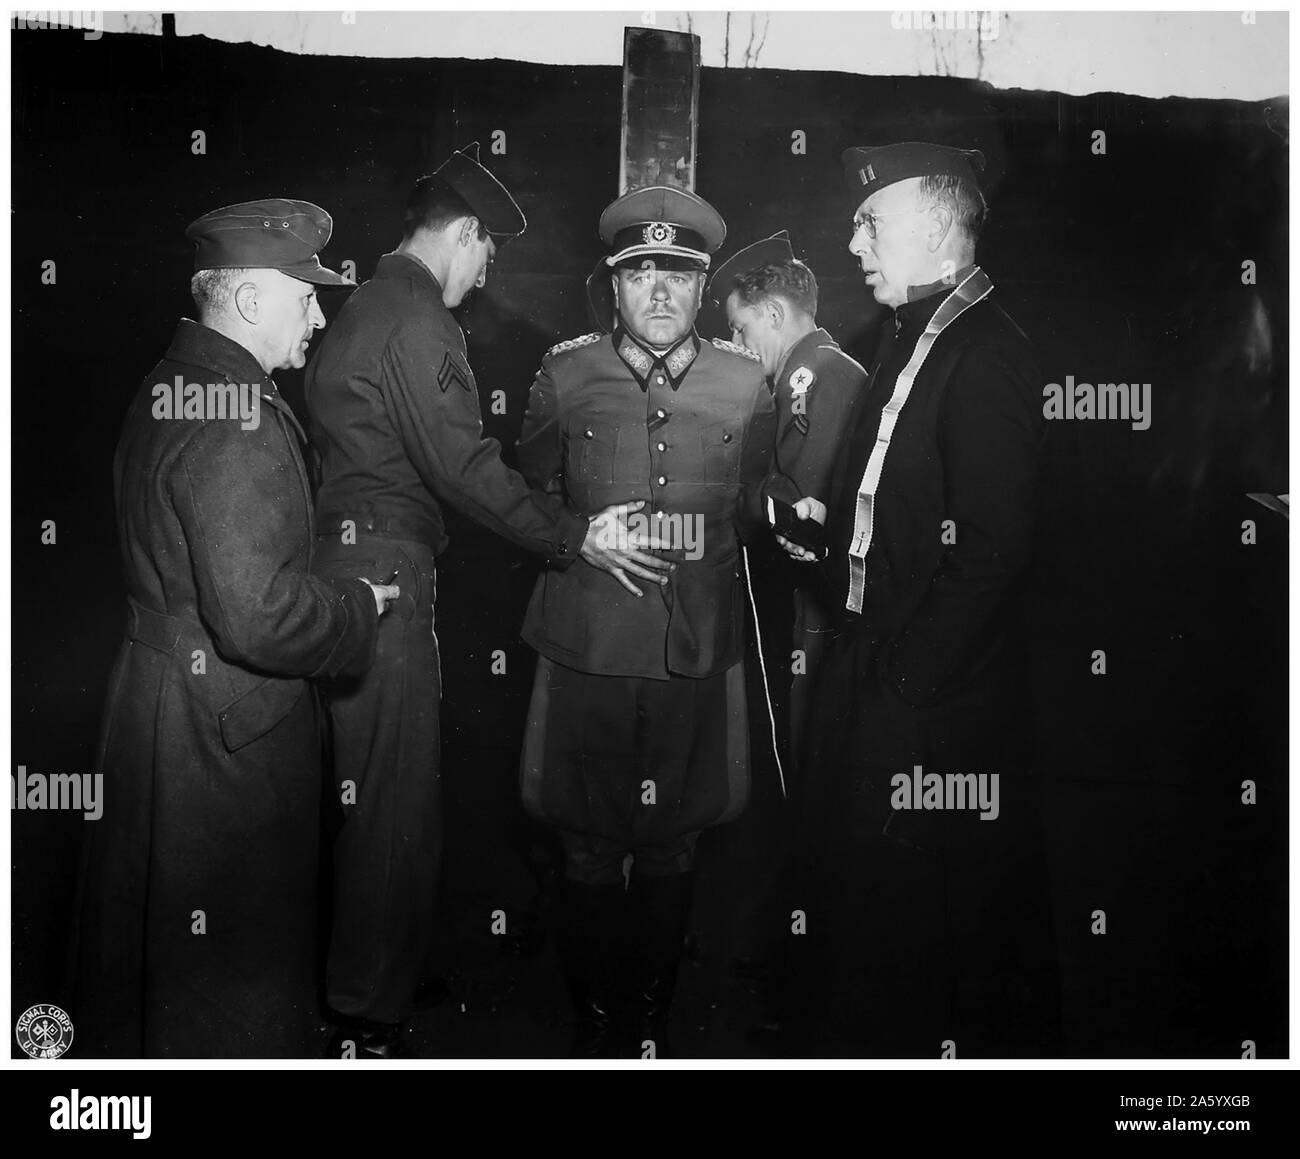 Fotografia del generale tedesco Anton Dostler (1891-1945) legato ad un palo prima della sua esecuzione da un plotone di esecuzione, Italia. Datata 1945 Foto Stock